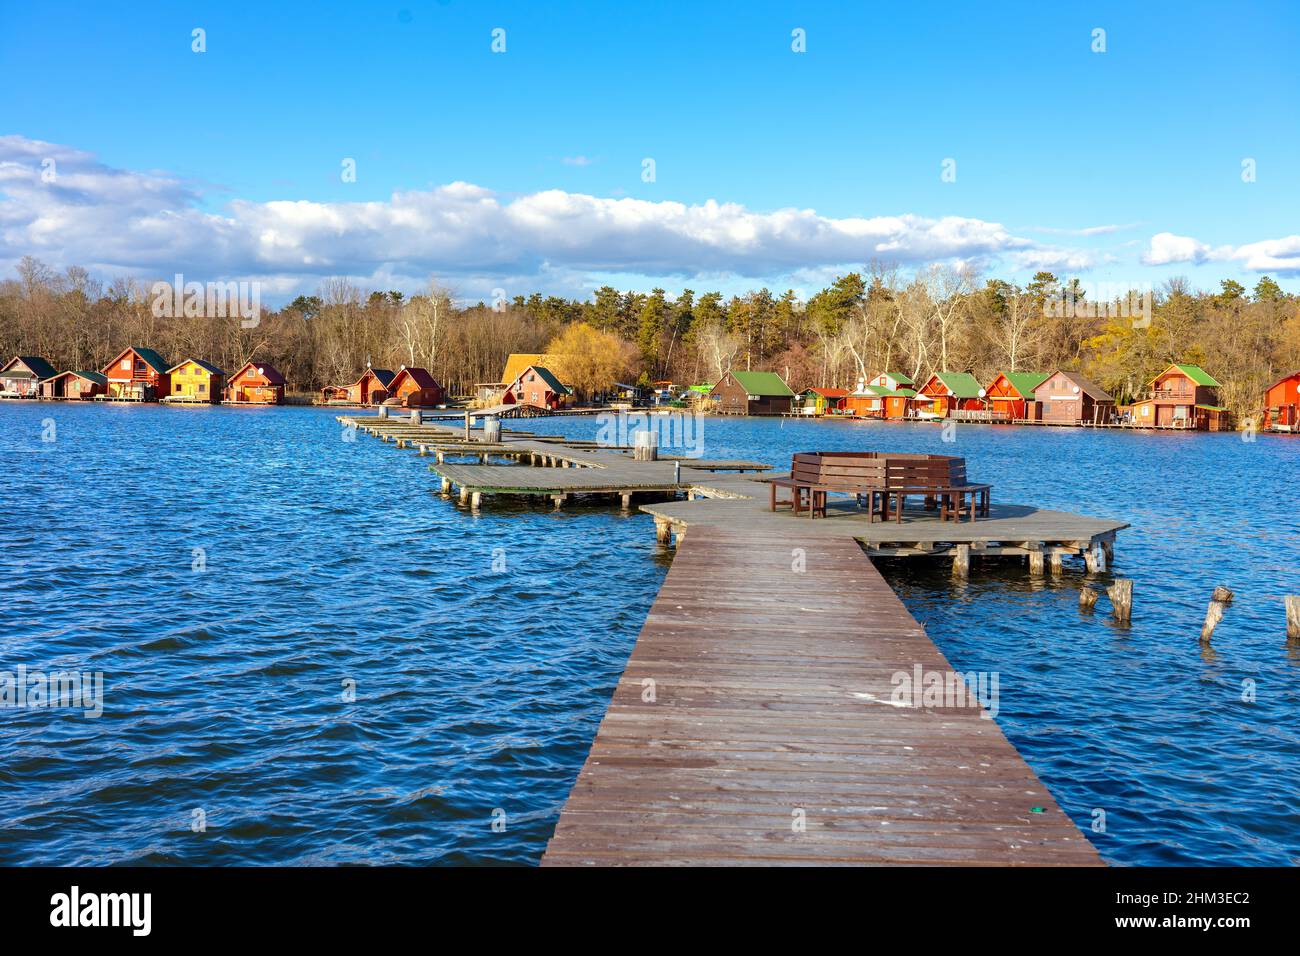 Derito zum See in Tata Ungarn mit niedlichen bunten Fischerhütten Stockfoto